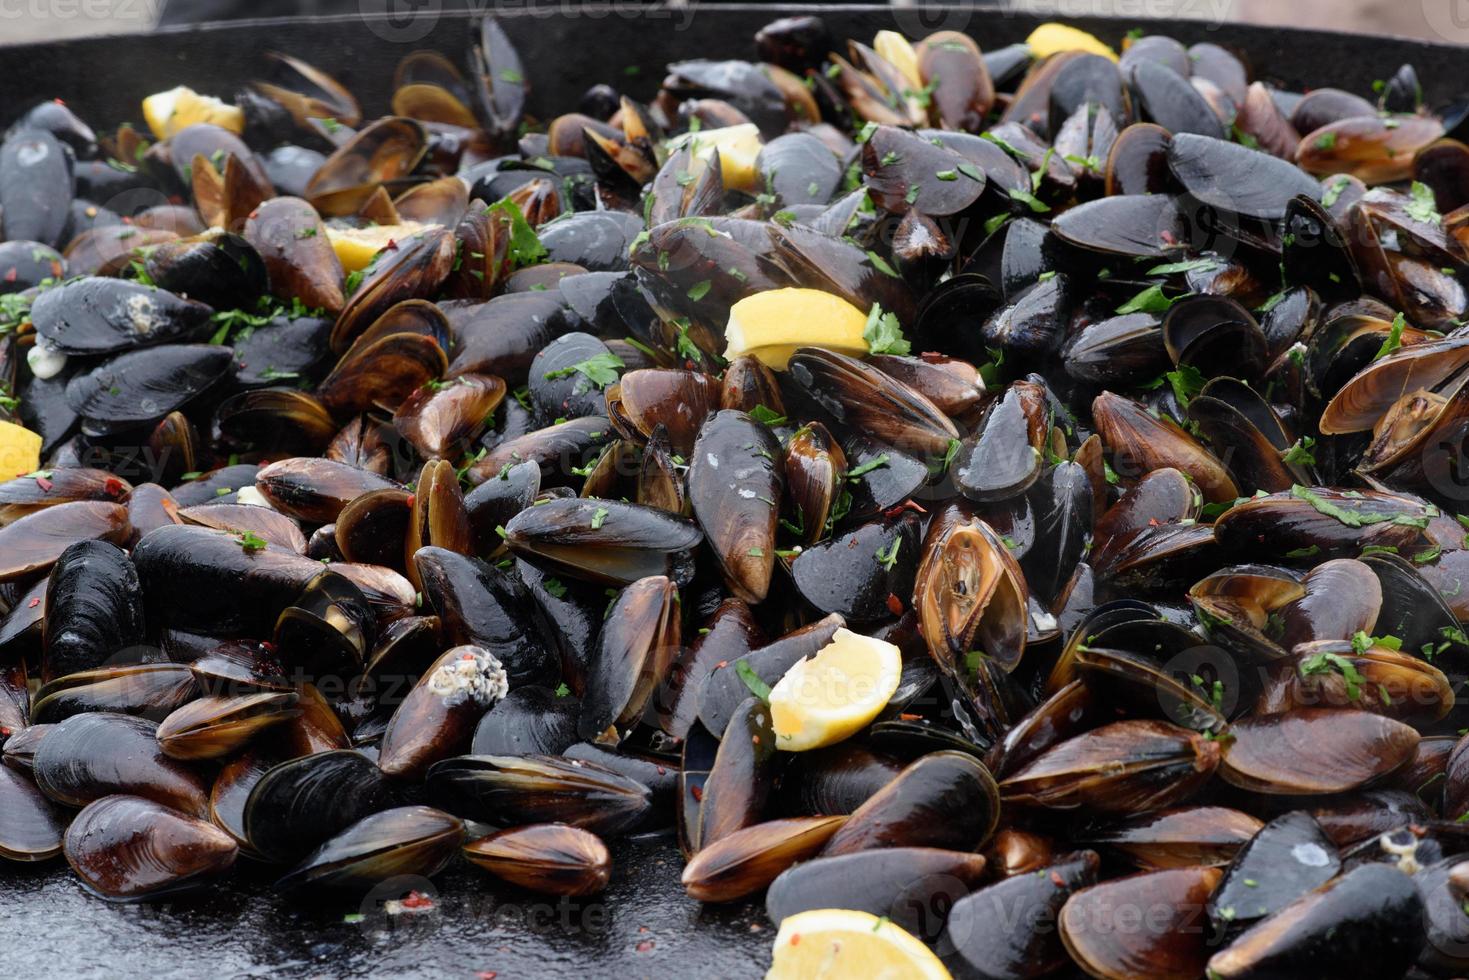 close-up van gekookte mosselen op een straatvoedselfestival, klaar om zeevruchten te eten gefotografeerd met zachte focus foto